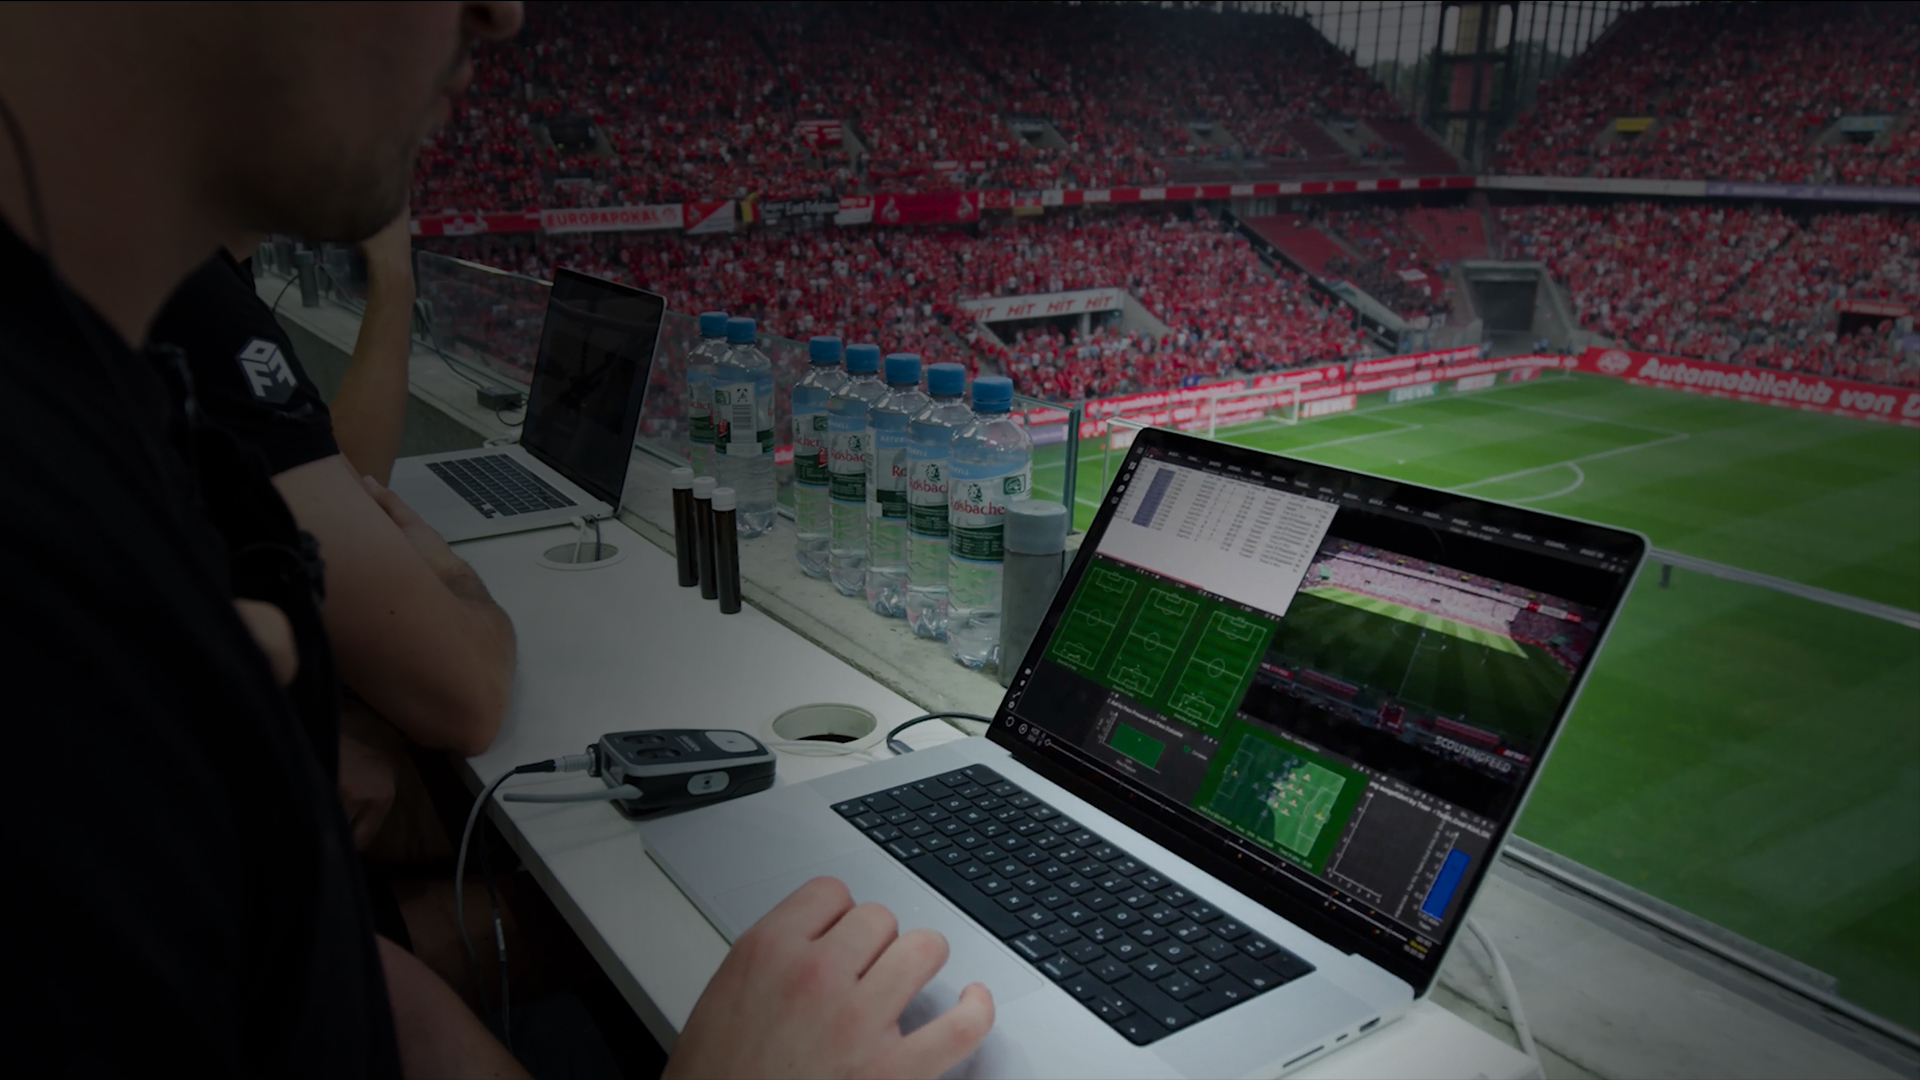 Une vue complète de la configuration d'analyse en direct de Catapult lors d'un match de football, mettant en évidence l'intégration de vidéos et de données en temps réel.